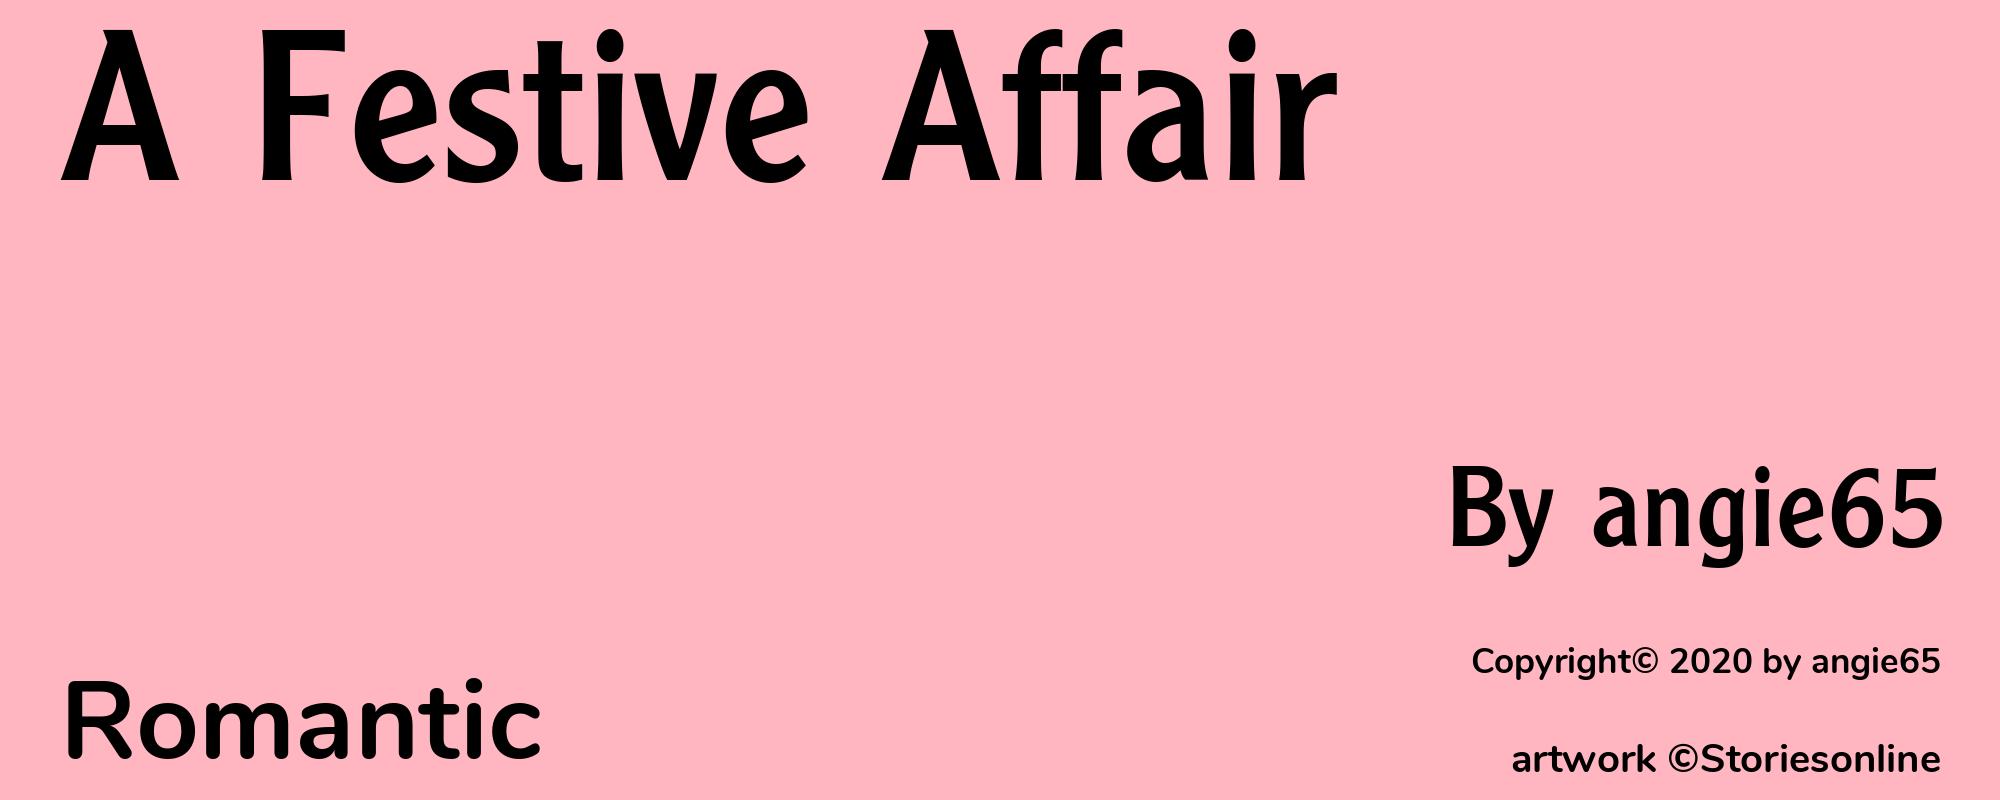 A Festive Affair - Cover